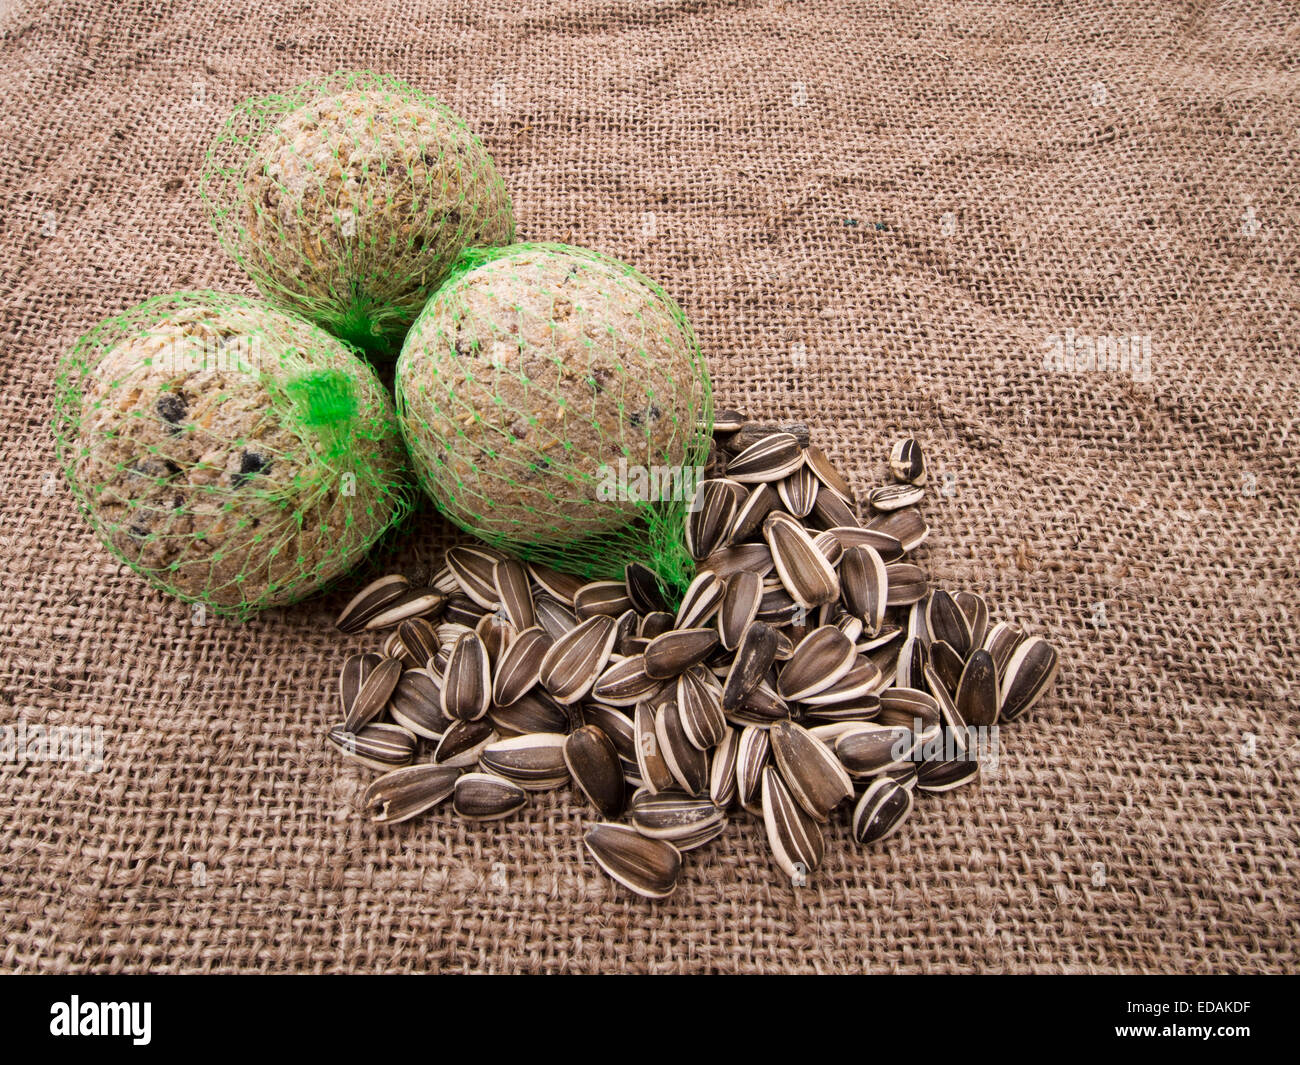 Corazones de girasol 10KG aves silvestres comida panadería grado tostada kernels semillas